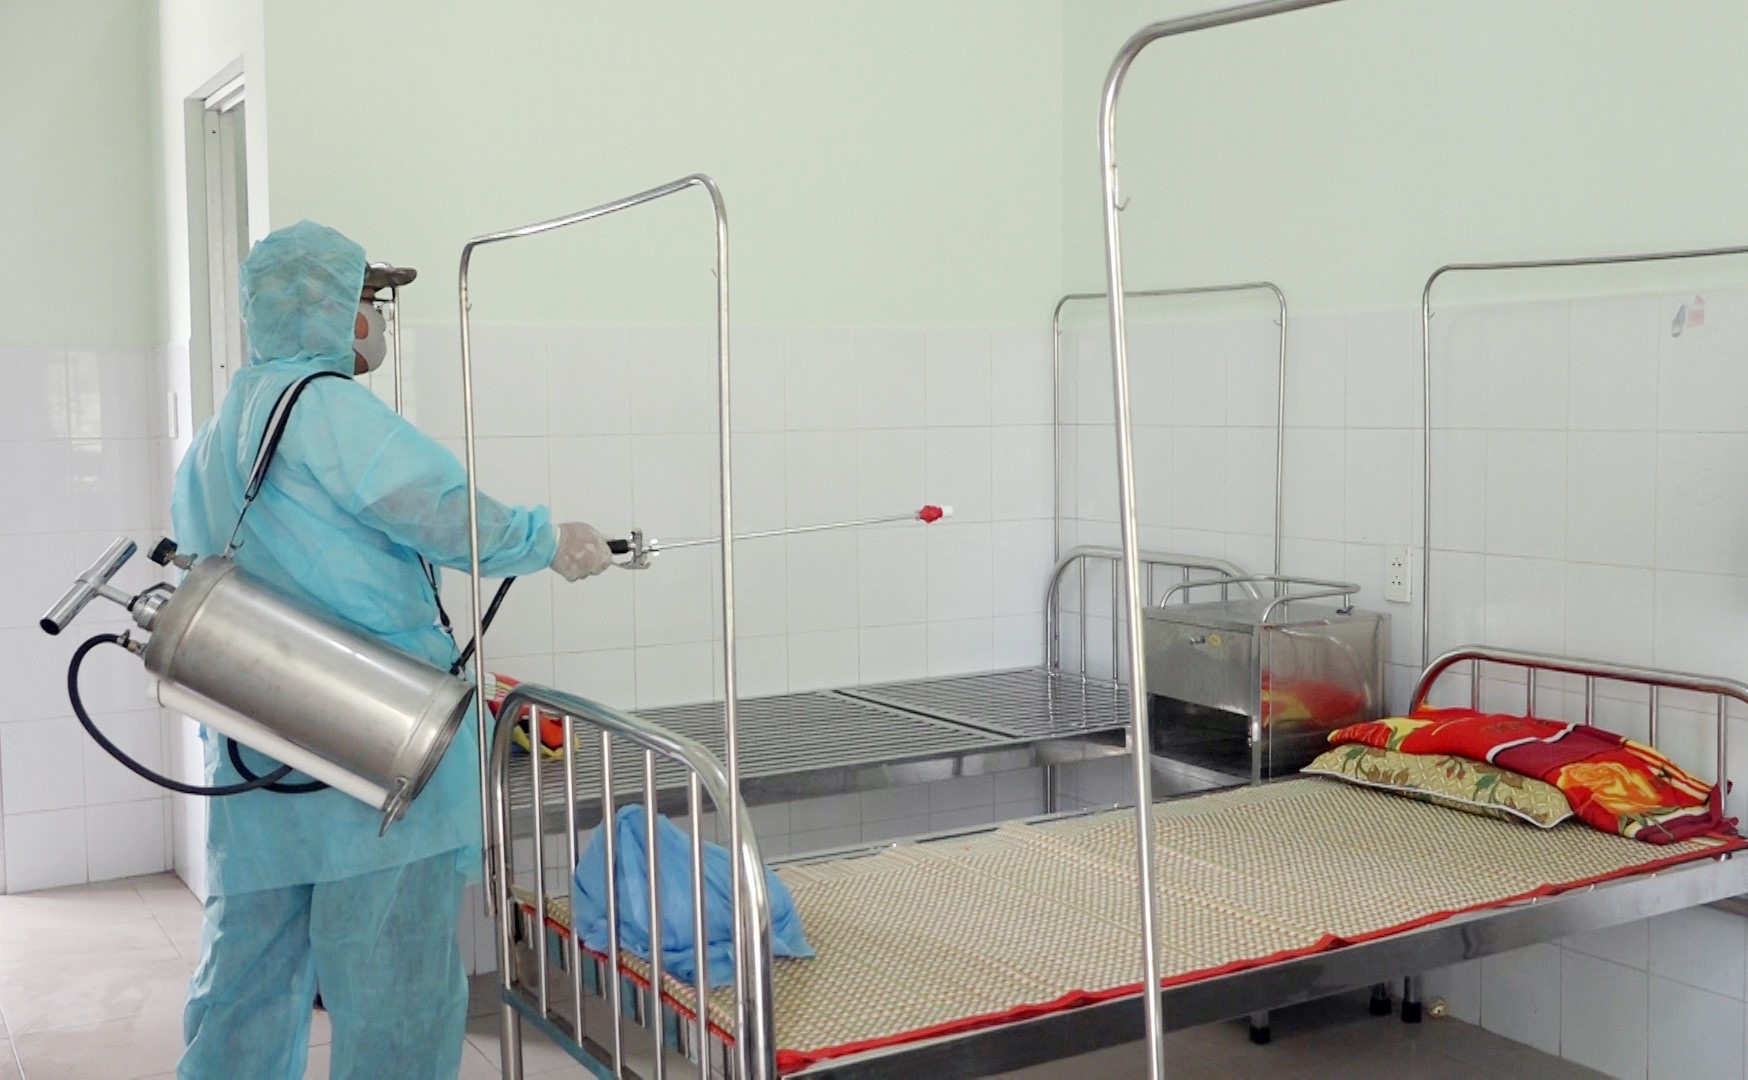 Huyện Thăng Bình thường xuyên phun thuốc tiêu độc khử trùng tại các khu vực công cộng, Trạm Y tế xã, thị trấn.